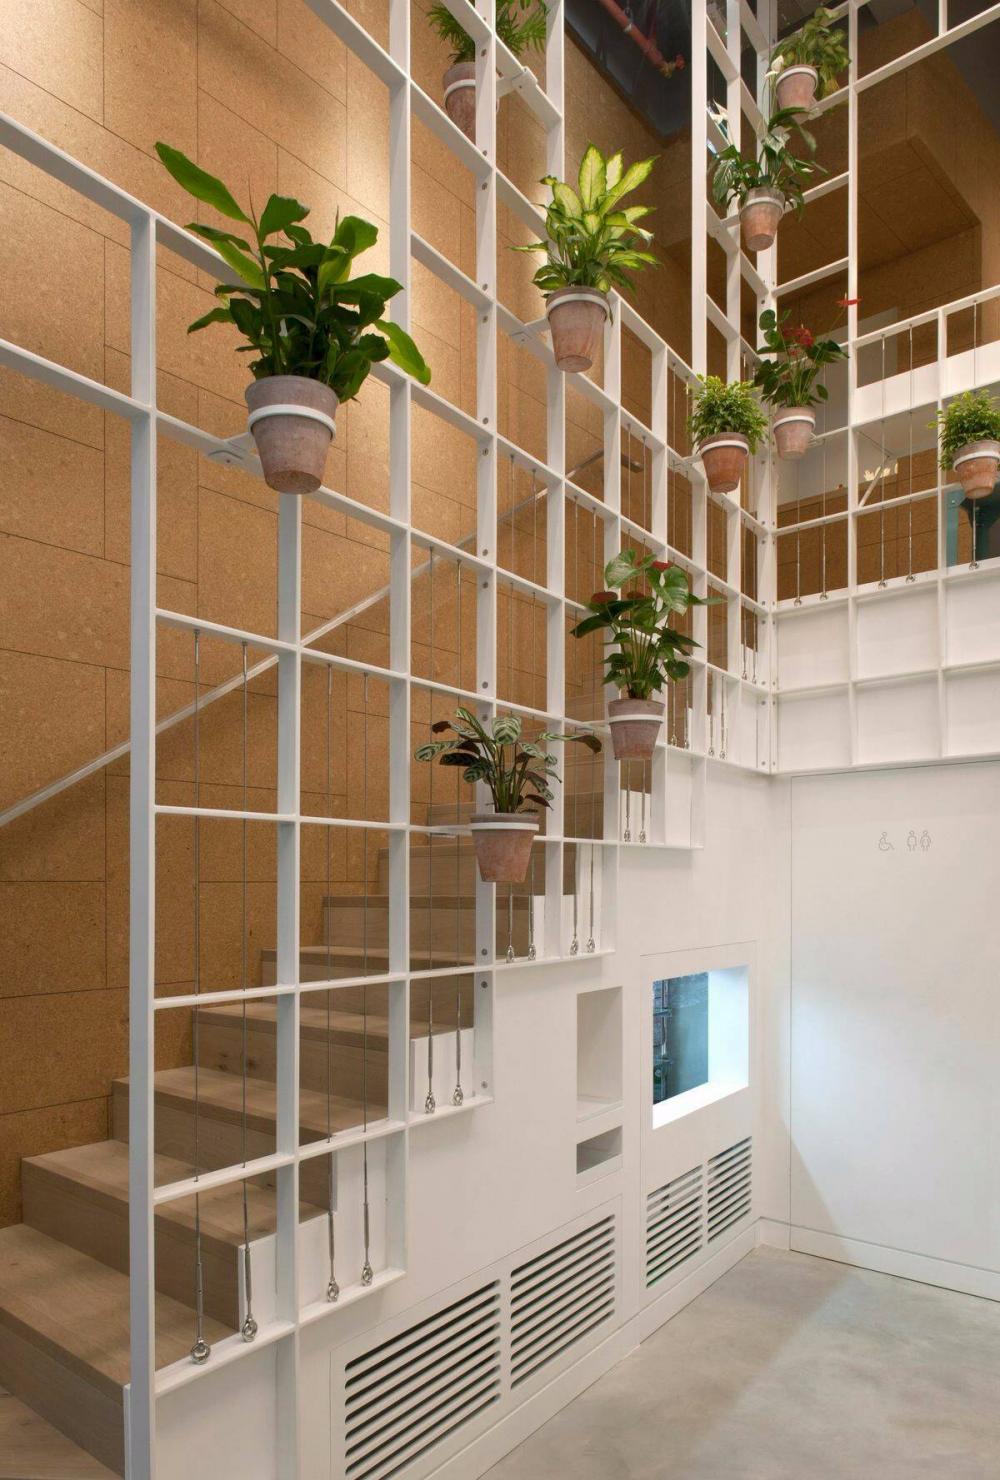 12 mẫu cầu thang độc đáo, thông thoáng dành cho nhà phố hiện đại